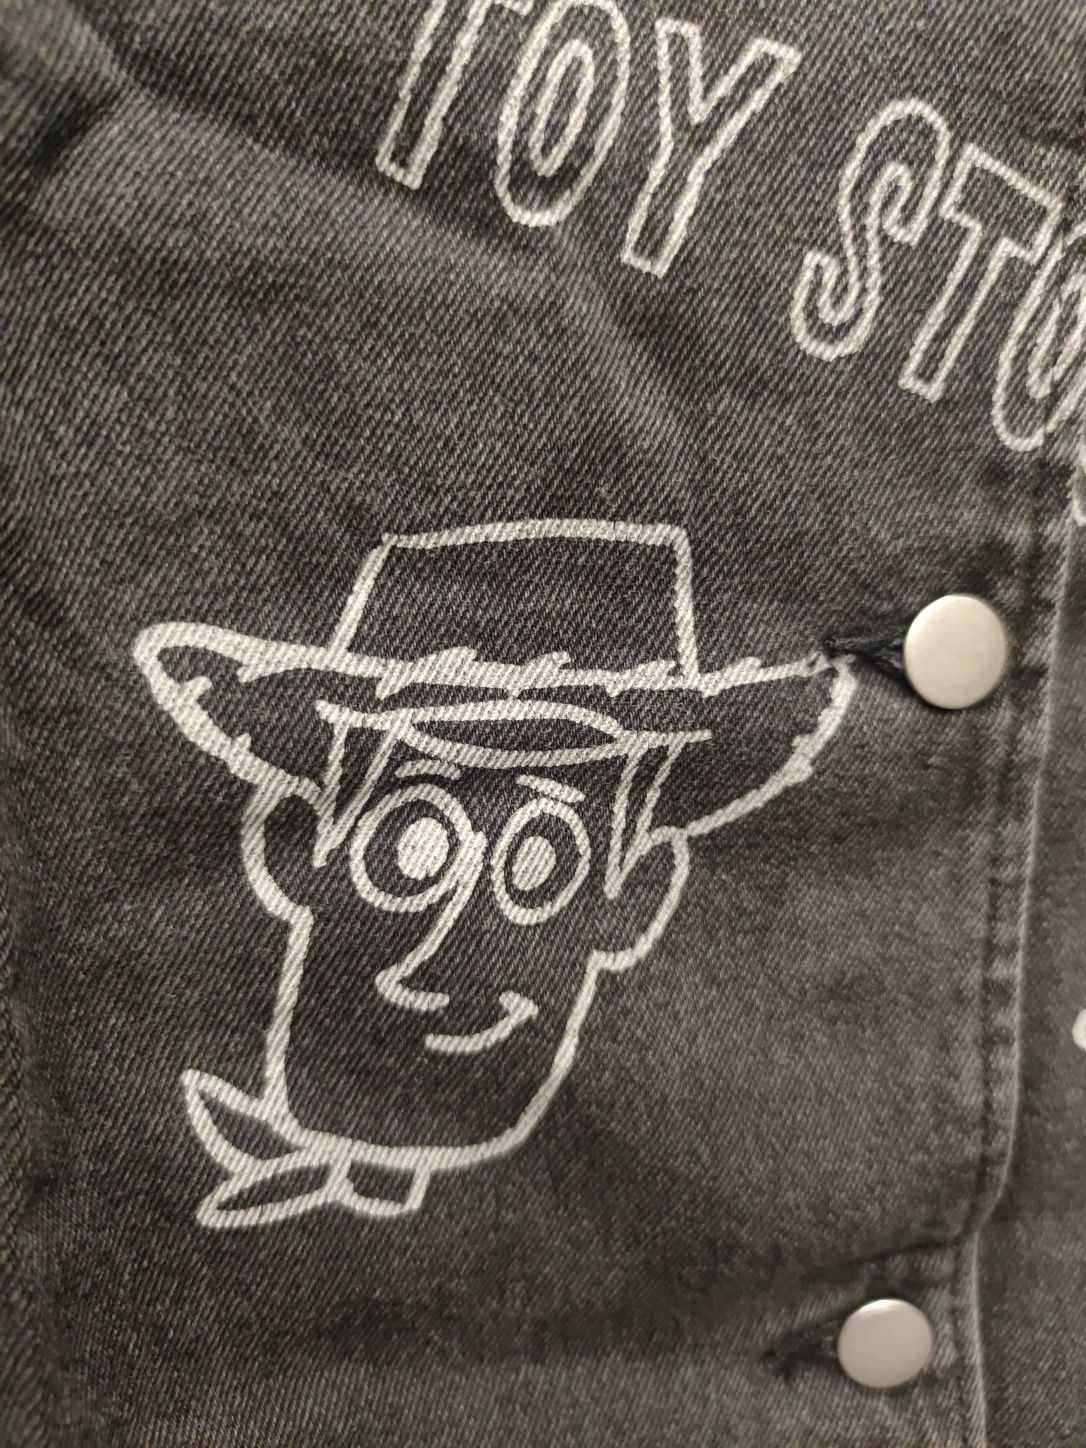 Dżinsowa kurtka H&M z nadrukiem "Toy Story" Disney Pixar. Nowa!